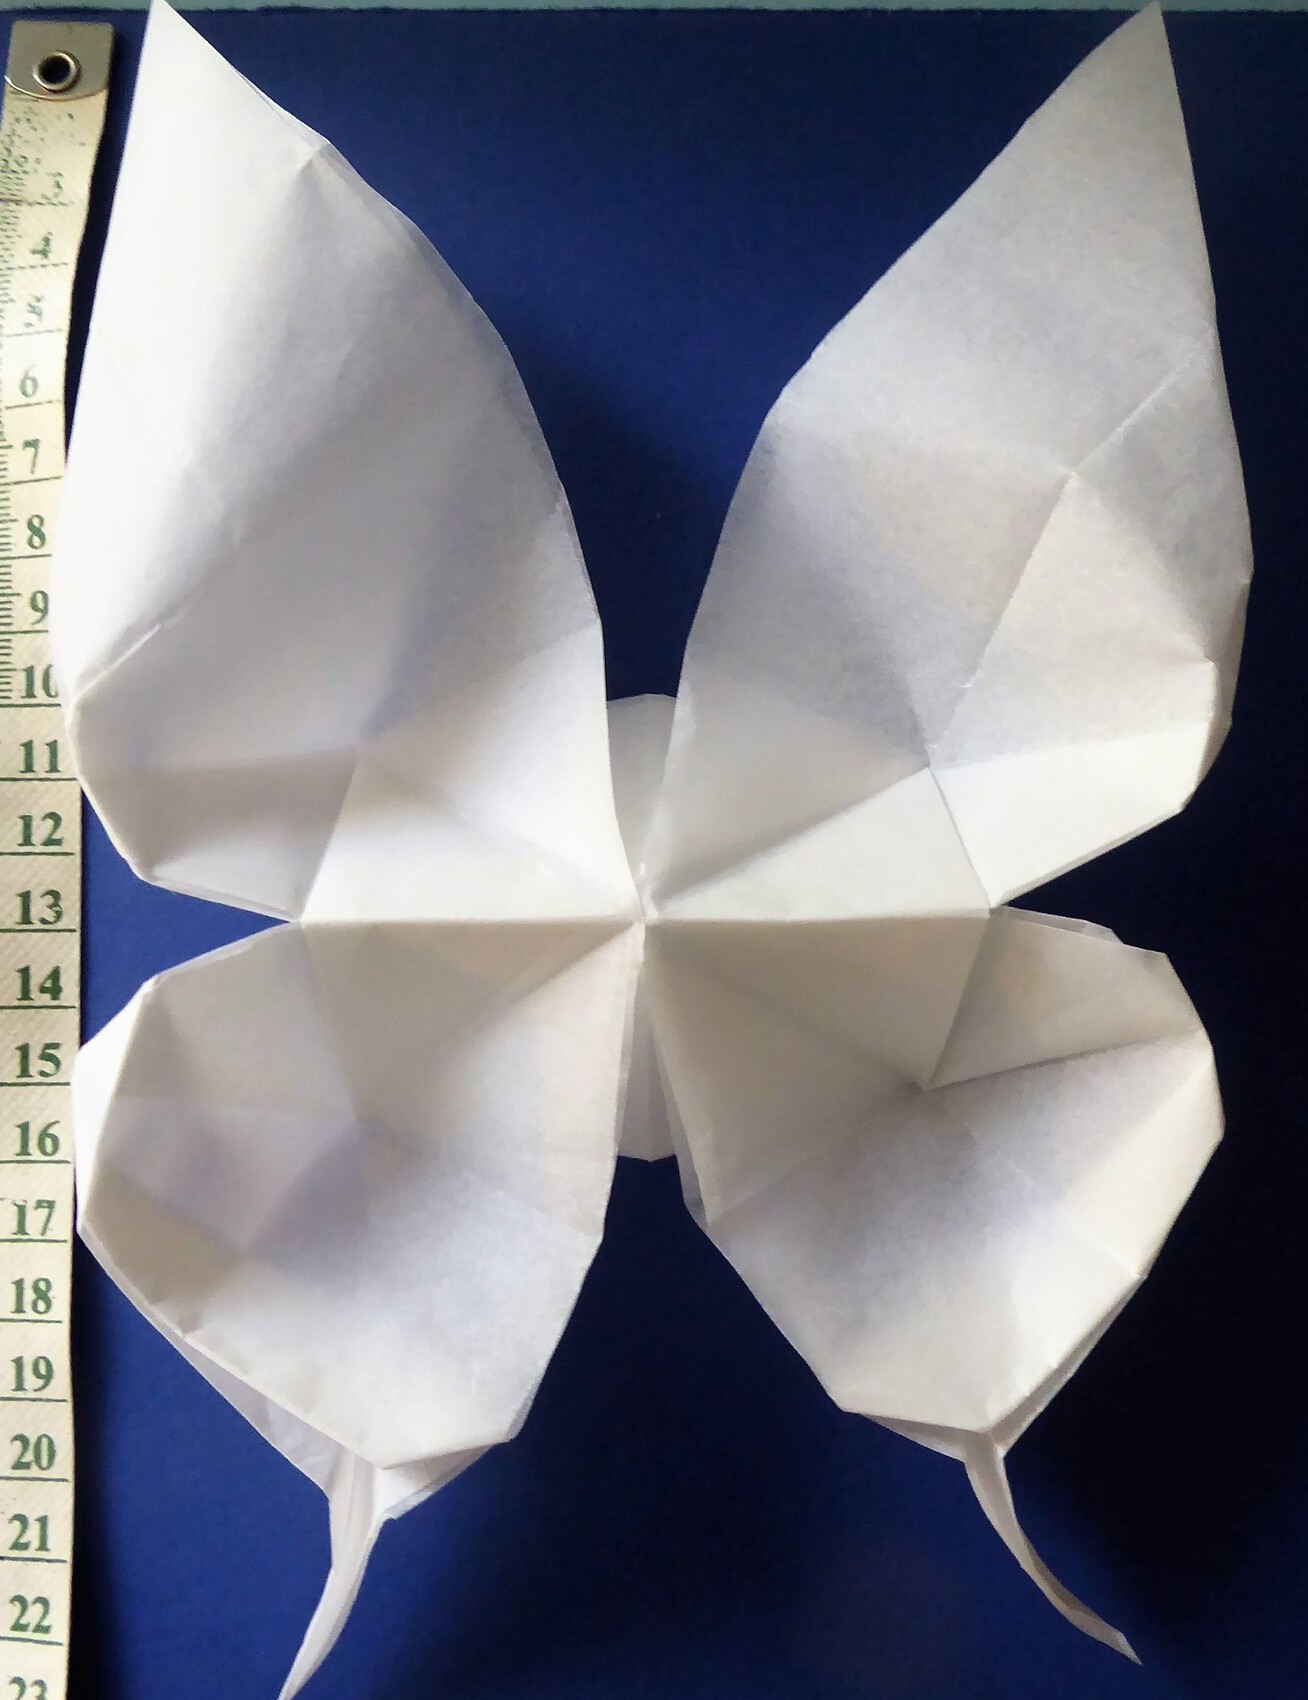 papillon en origami